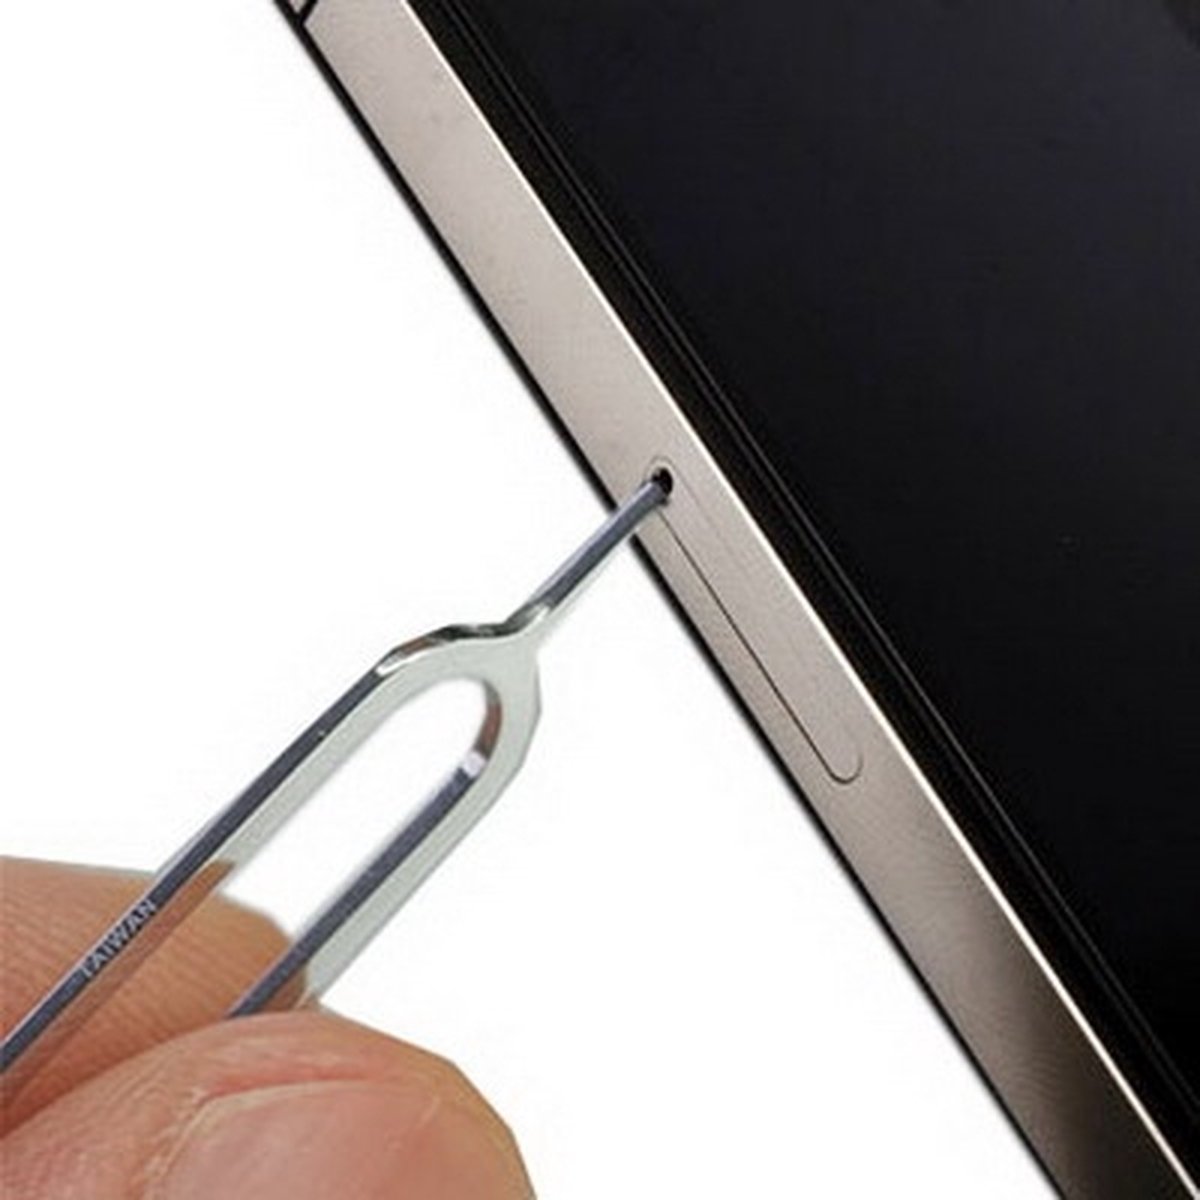 SIM-kaartvakhouder Eject Pin Key Tool voor iPhone, Galaxy, Huawei, Xiaomi, HTC en andere slimme telefoons - Merkloos